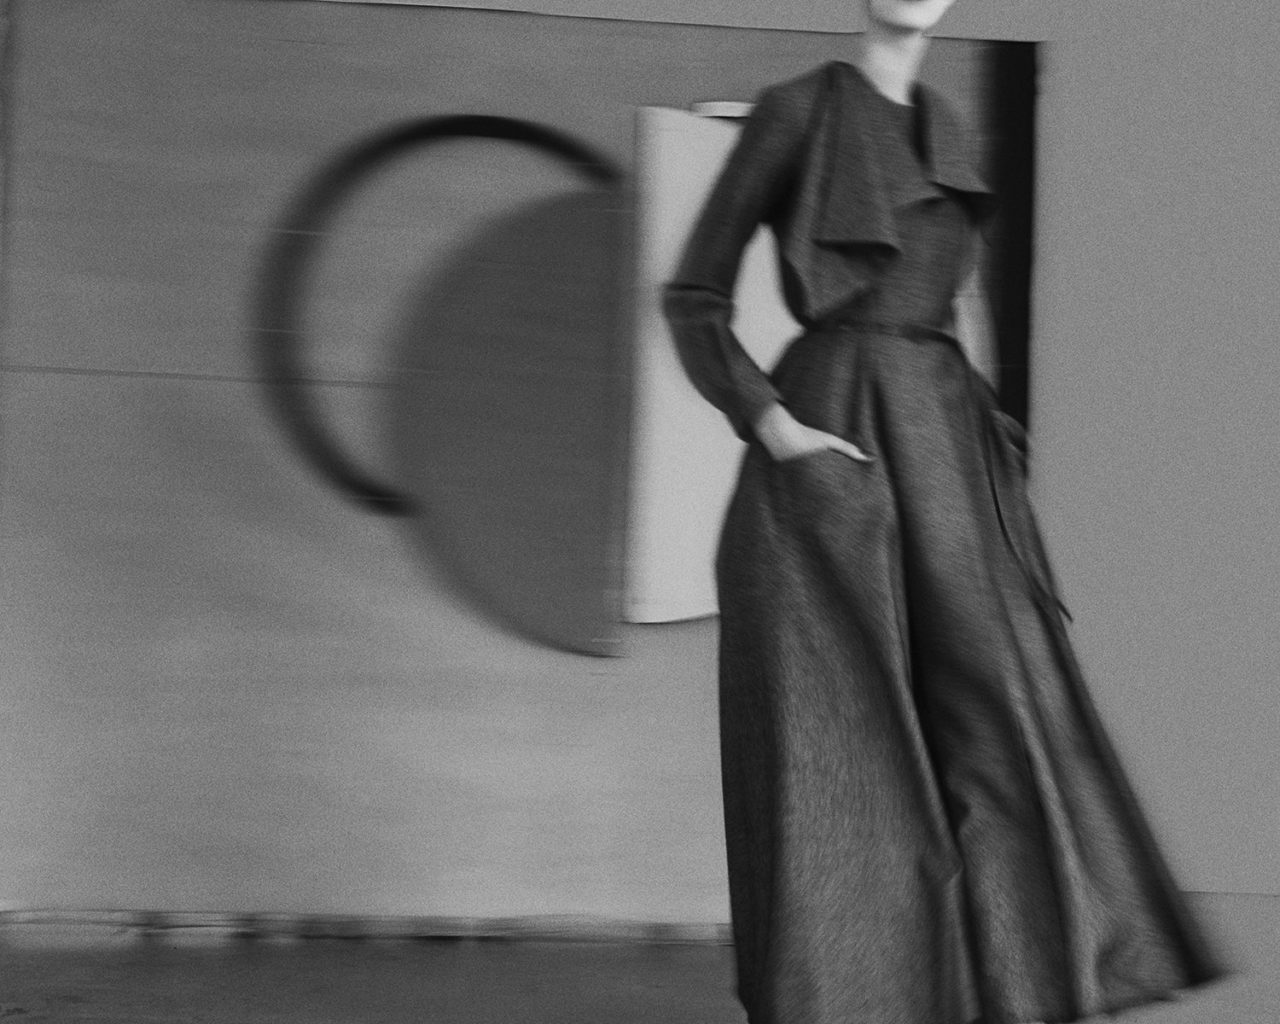 Модный трехтомник Dior by Sarah Moon как новый объект желания